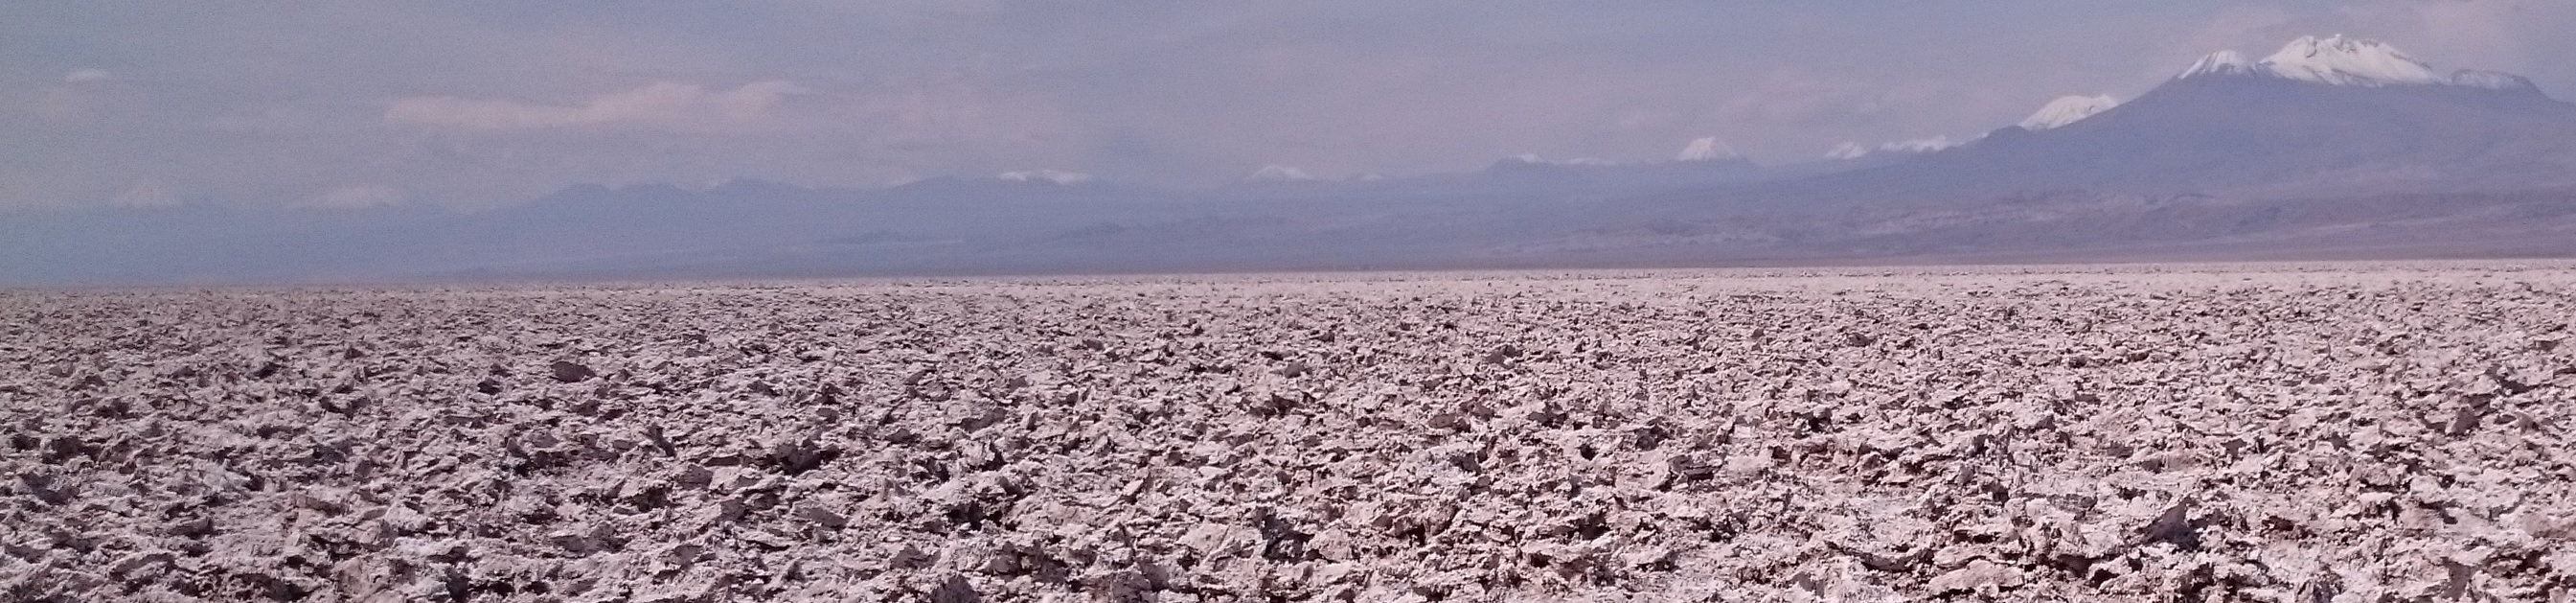 The lithium-bearing Salar de Atacama in Chile. Photo &copy; A. Brenning.